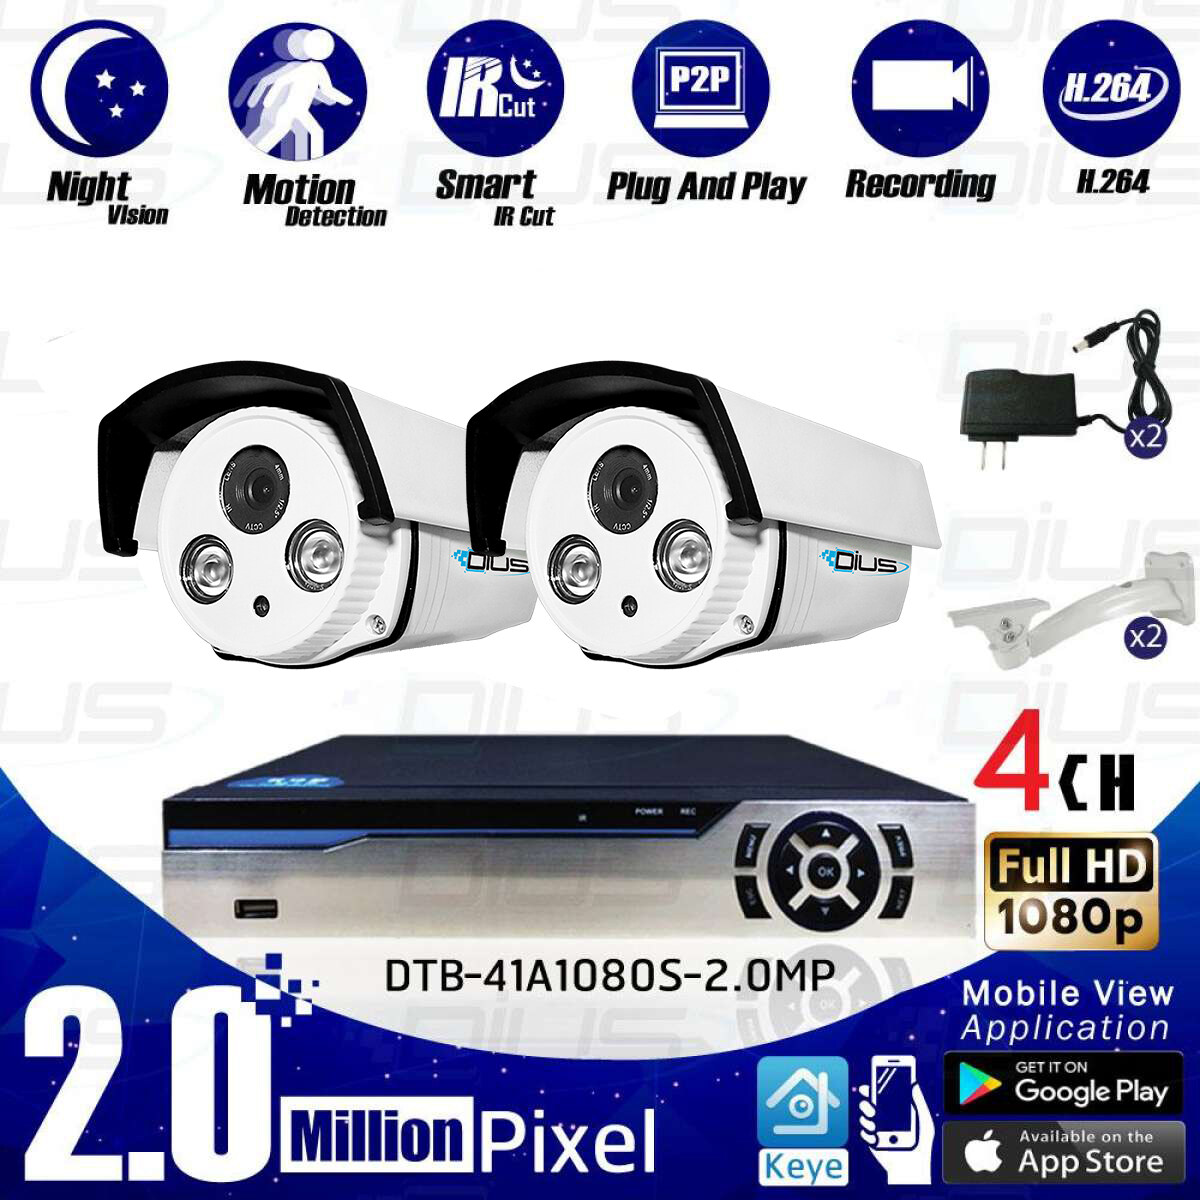 ชุดกล้องวงจรปิด CCTV Kit Set 2MP Full HD 1080p ทรงกระบอก กล้อง 2ตัว พร้อมเครื่องบันทึก 4CH DVR (DTR-AFS1080B04BN)